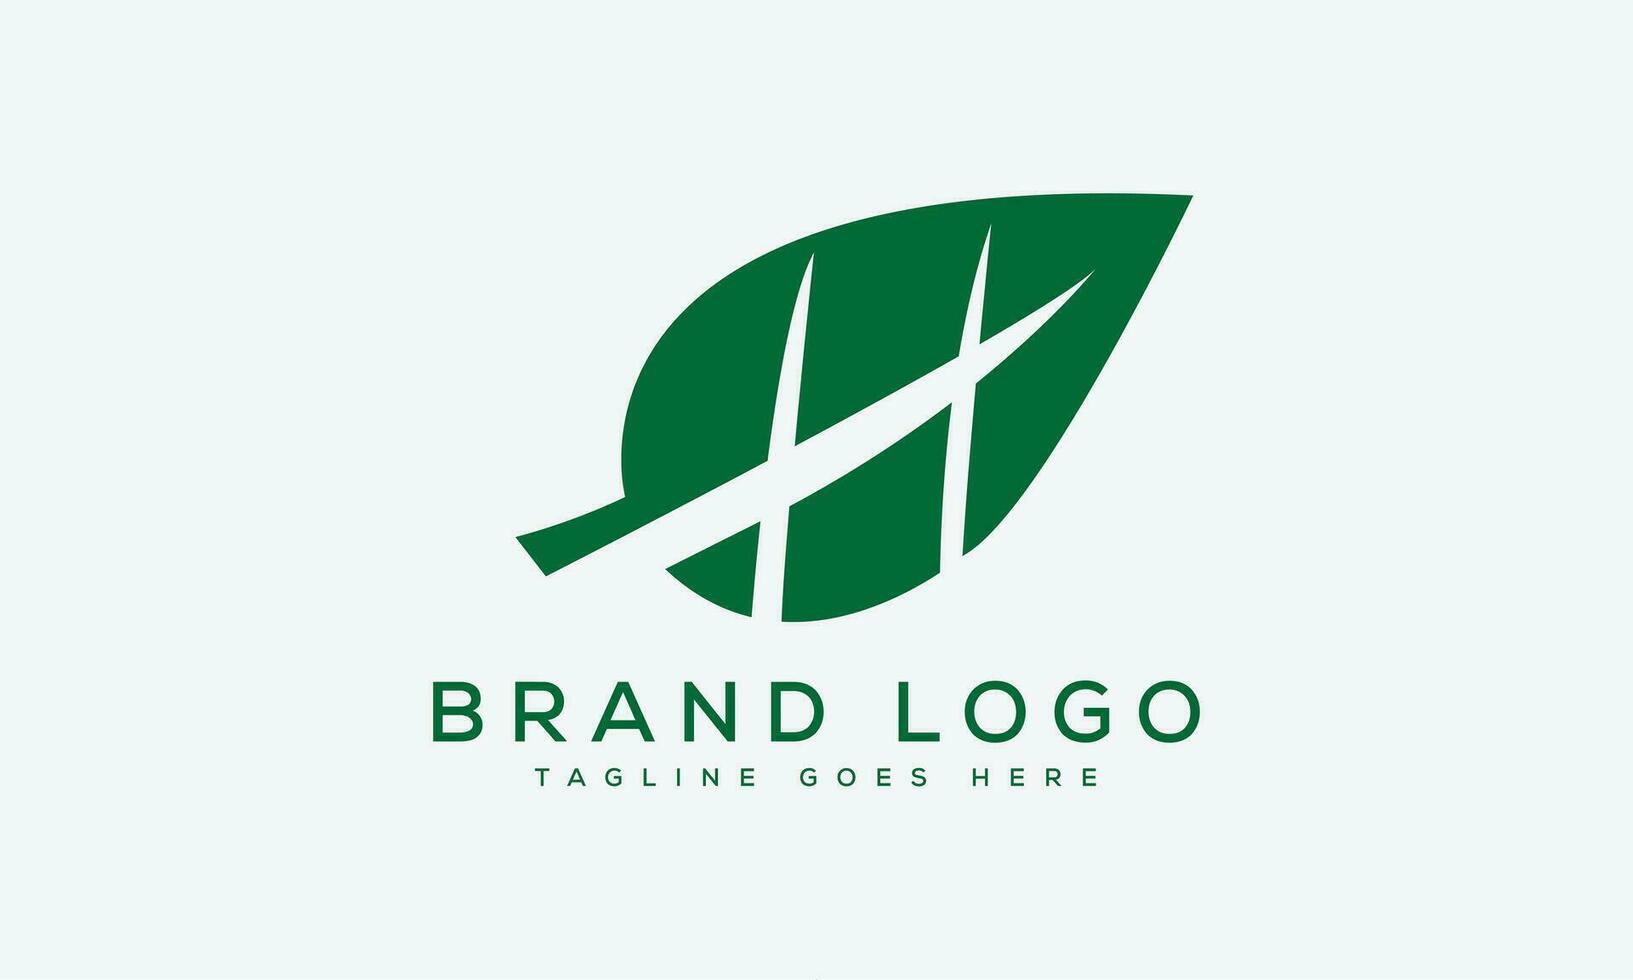 brev ha logotyp design vektor mall design för varumärke.